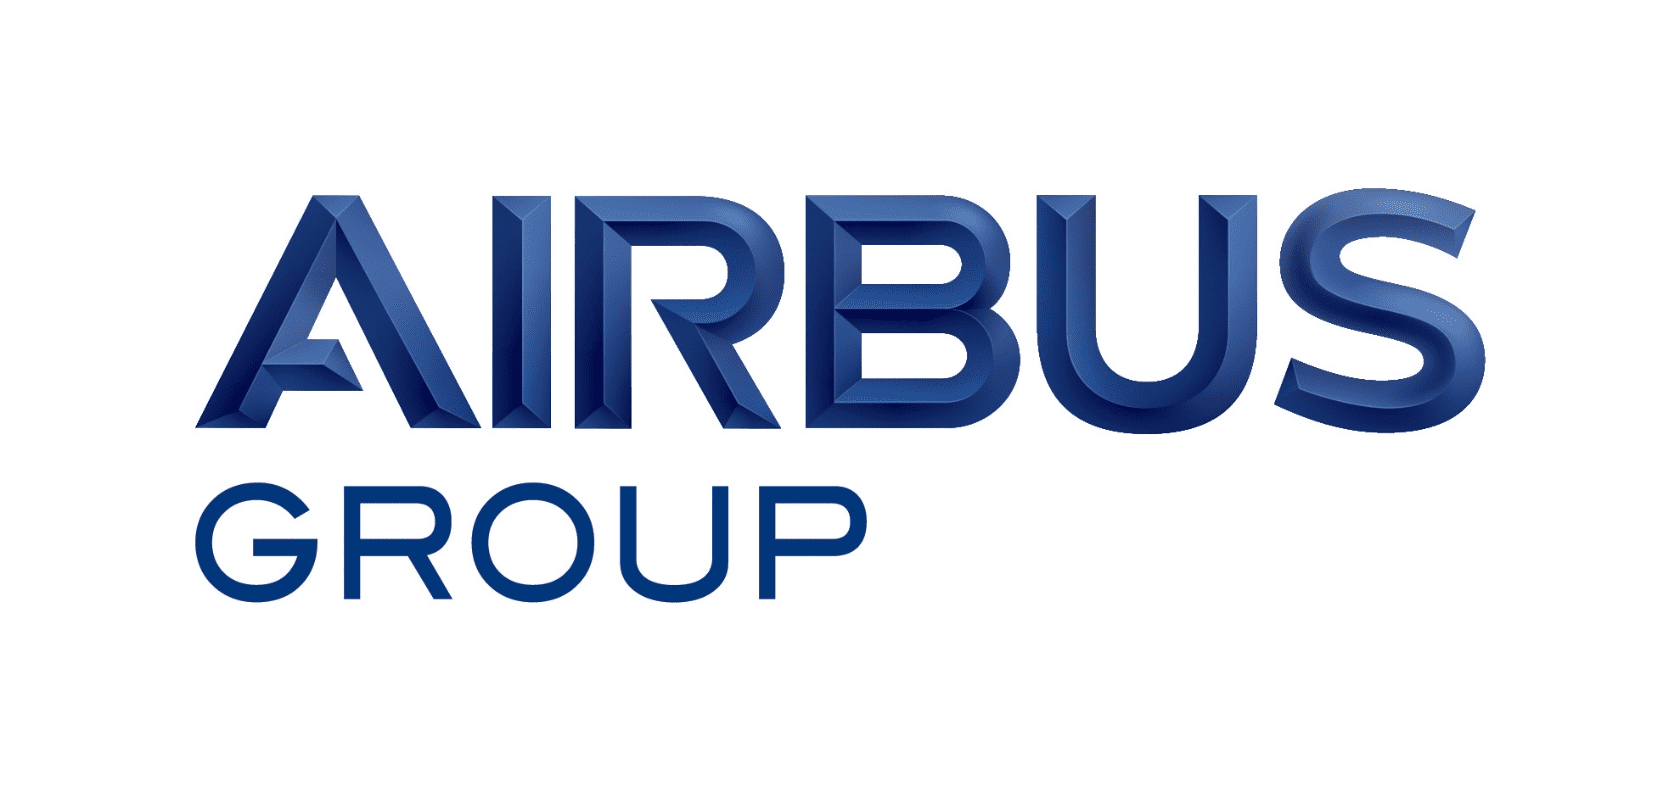 Airbus Group: Fabricación de aviones - Movilidad aérea.